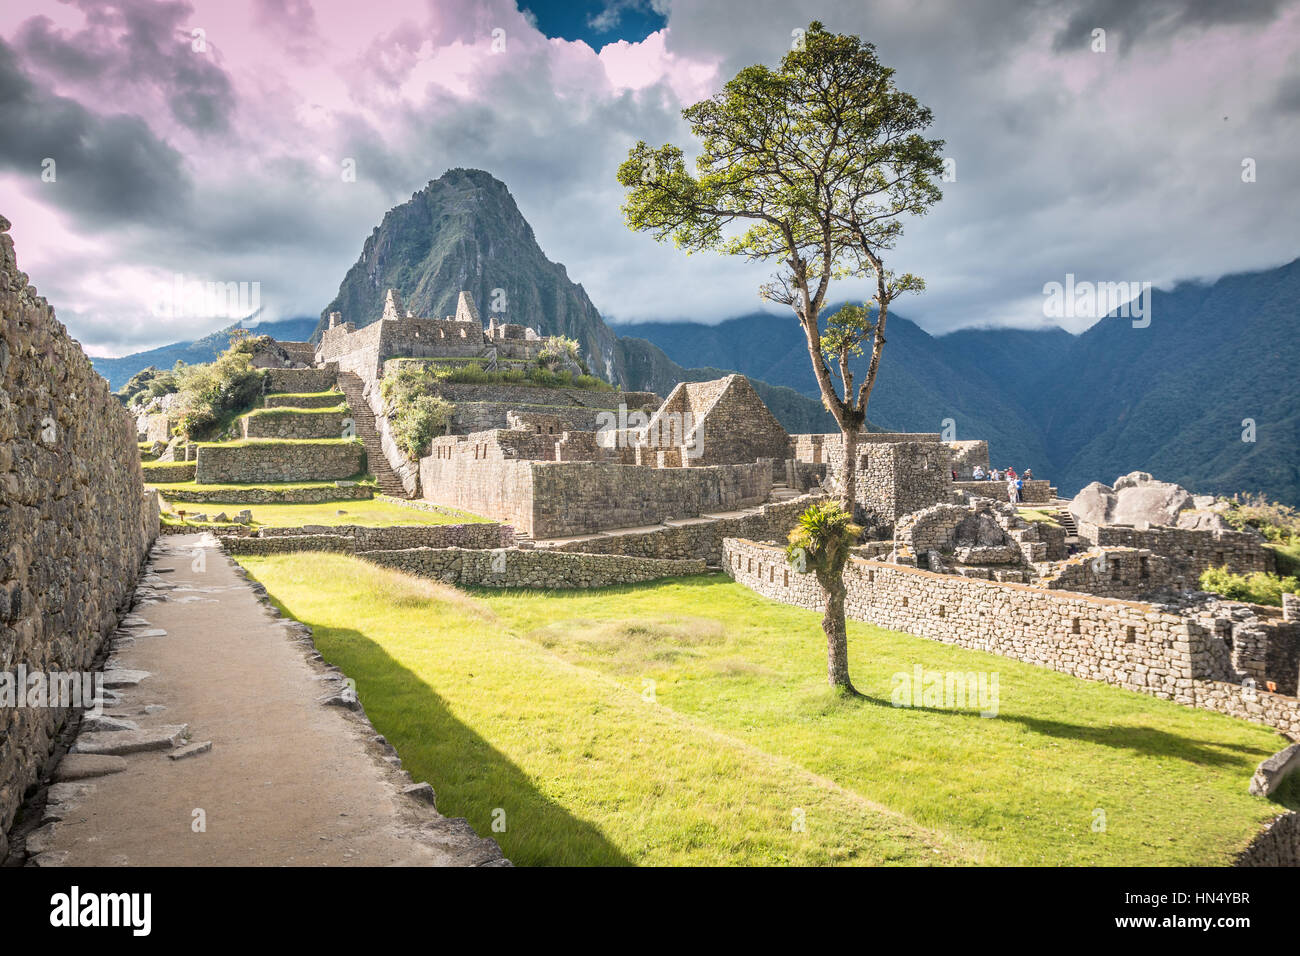 Machu Picchu ruins in Peru Stock Photo